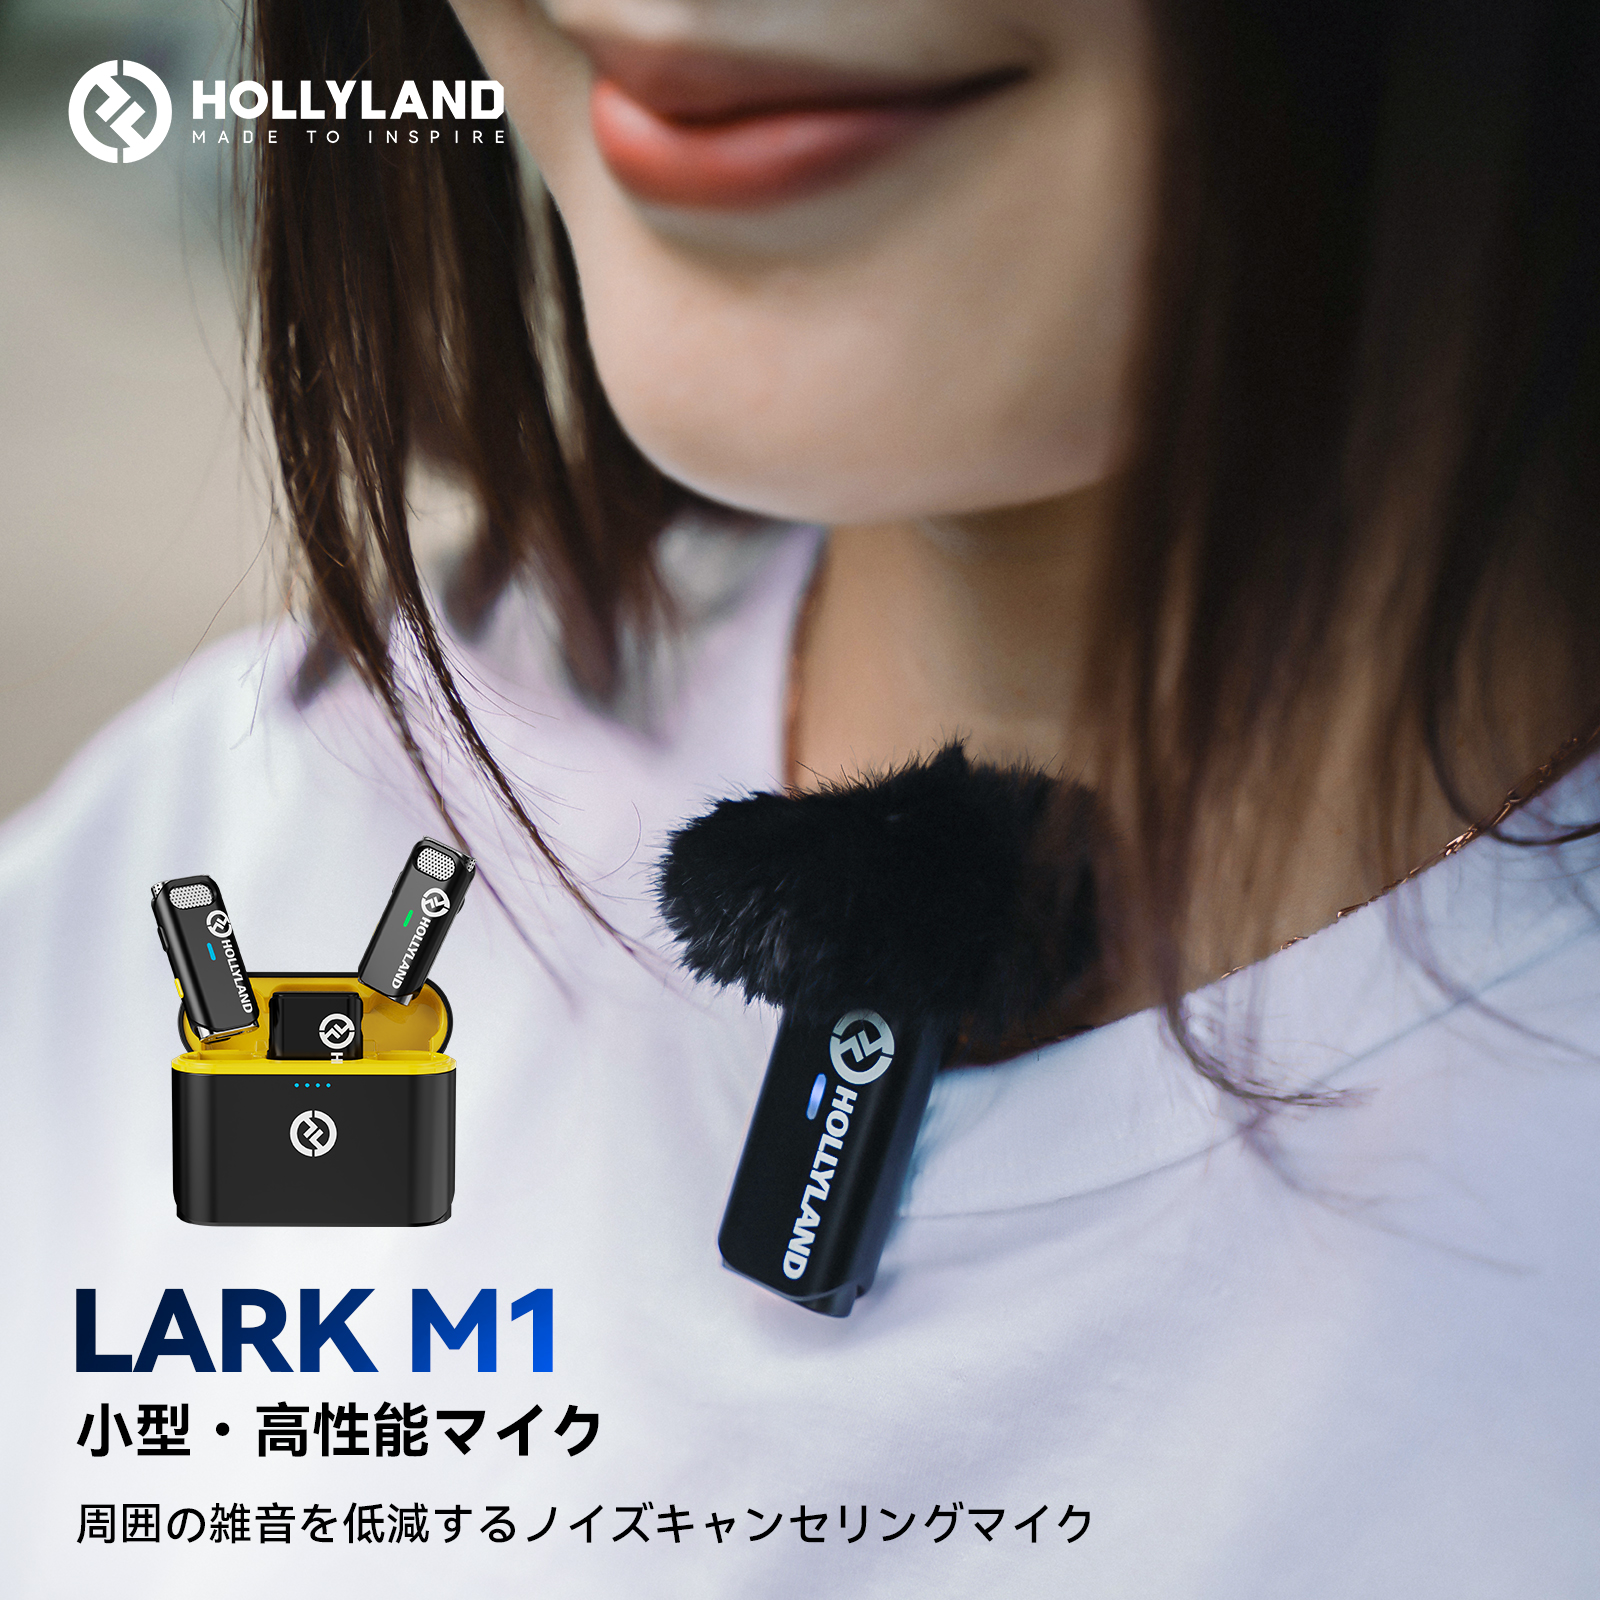 【レビューで送料無料】Hollyland Lark M1 ワイヤレスマイク収納充電ケース付き＆自動ペアリング ピンマイク ワイヤレス スマホ カメラ レコーダーなどに対応